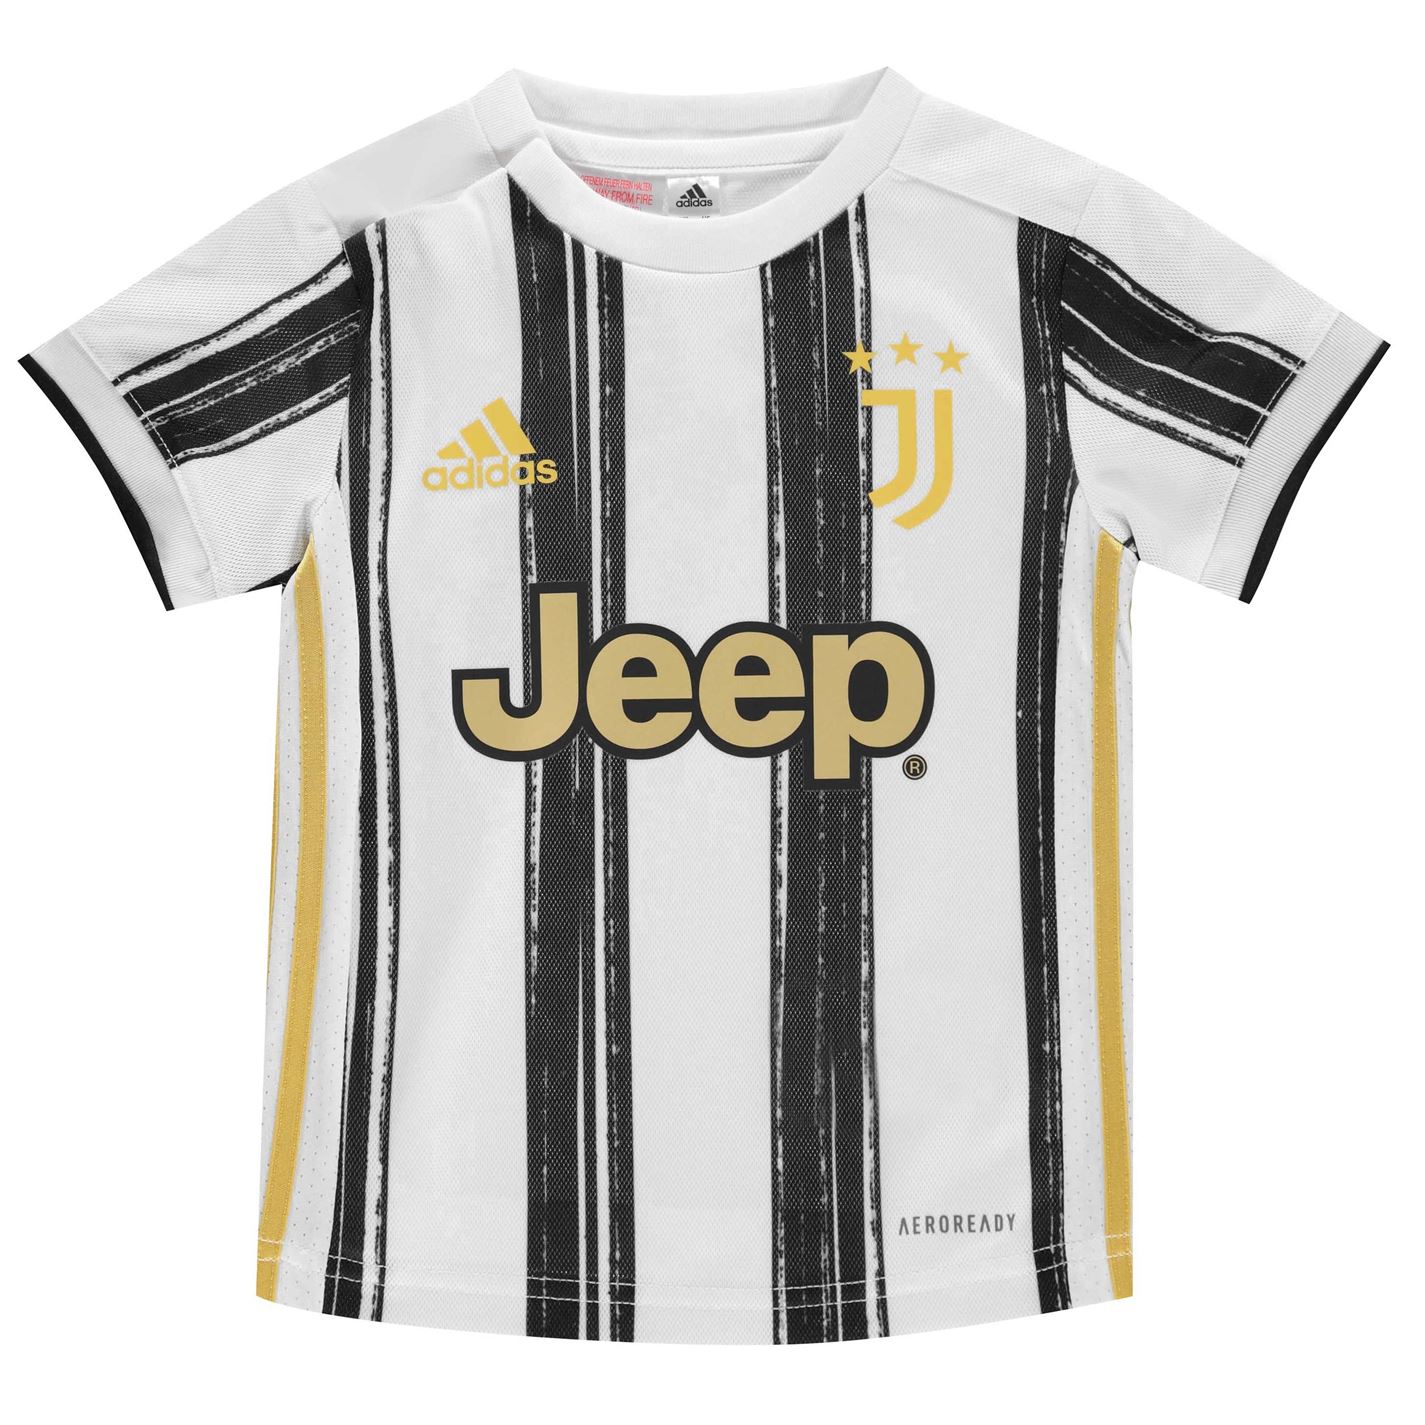 adidas Juventus Home Baby Kit 2020 2021 - ELITOO